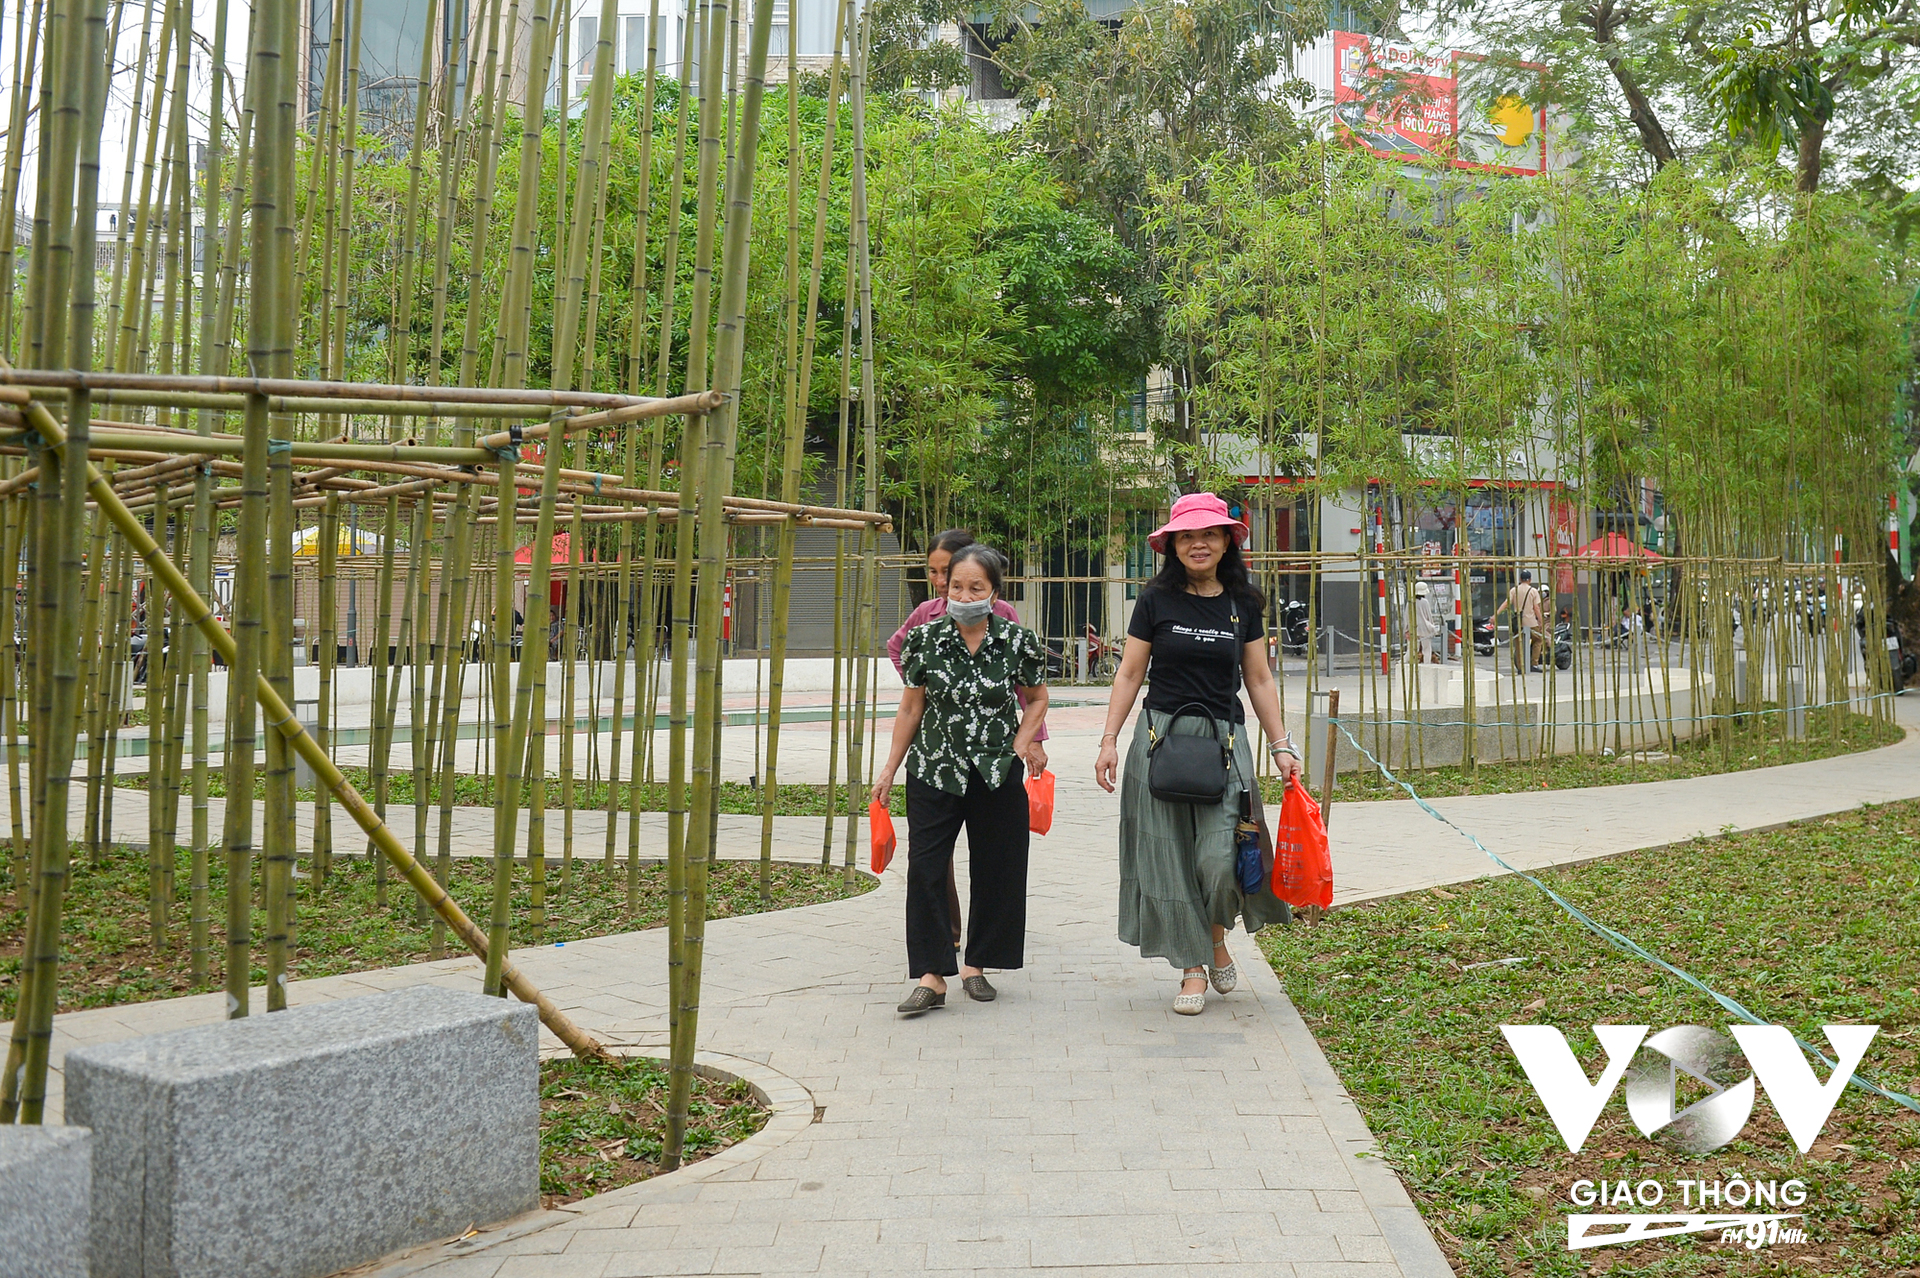 Những du khách tới thăm Hà Nội cũng bất ngờ và thích thú khi đi dạo qua vườn trúc trong lòng thành phố.